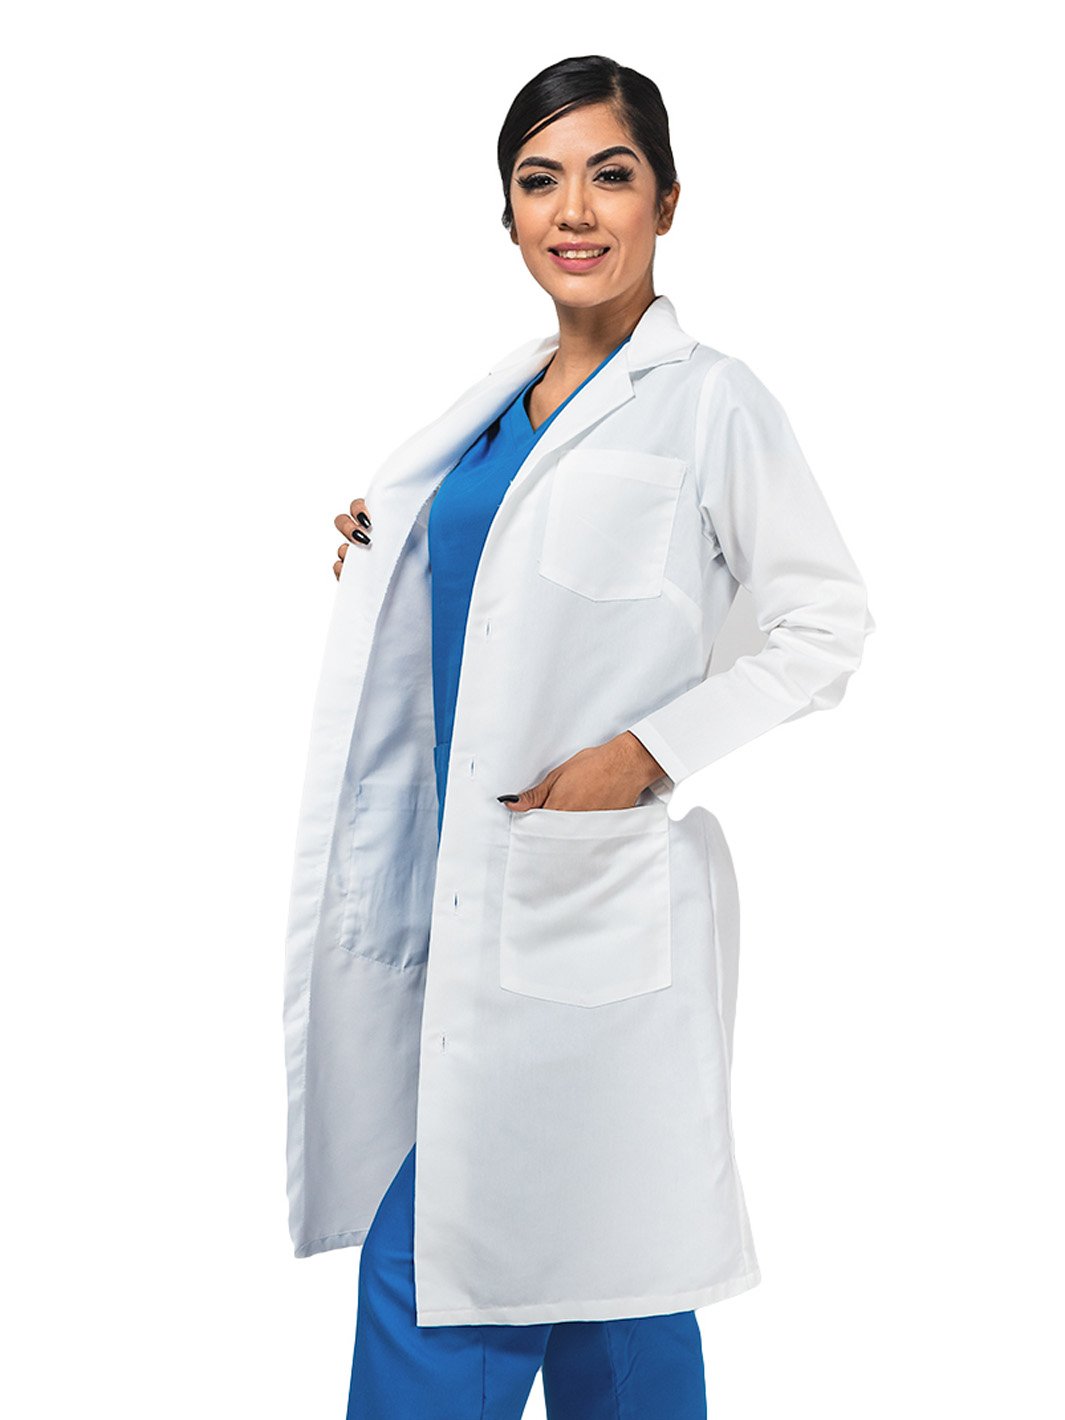 Mujer vistiendo bata blanca de laboratorio para médico que cuenta con cuatro botones, tres bolsas frontales, y cinto en la espalda